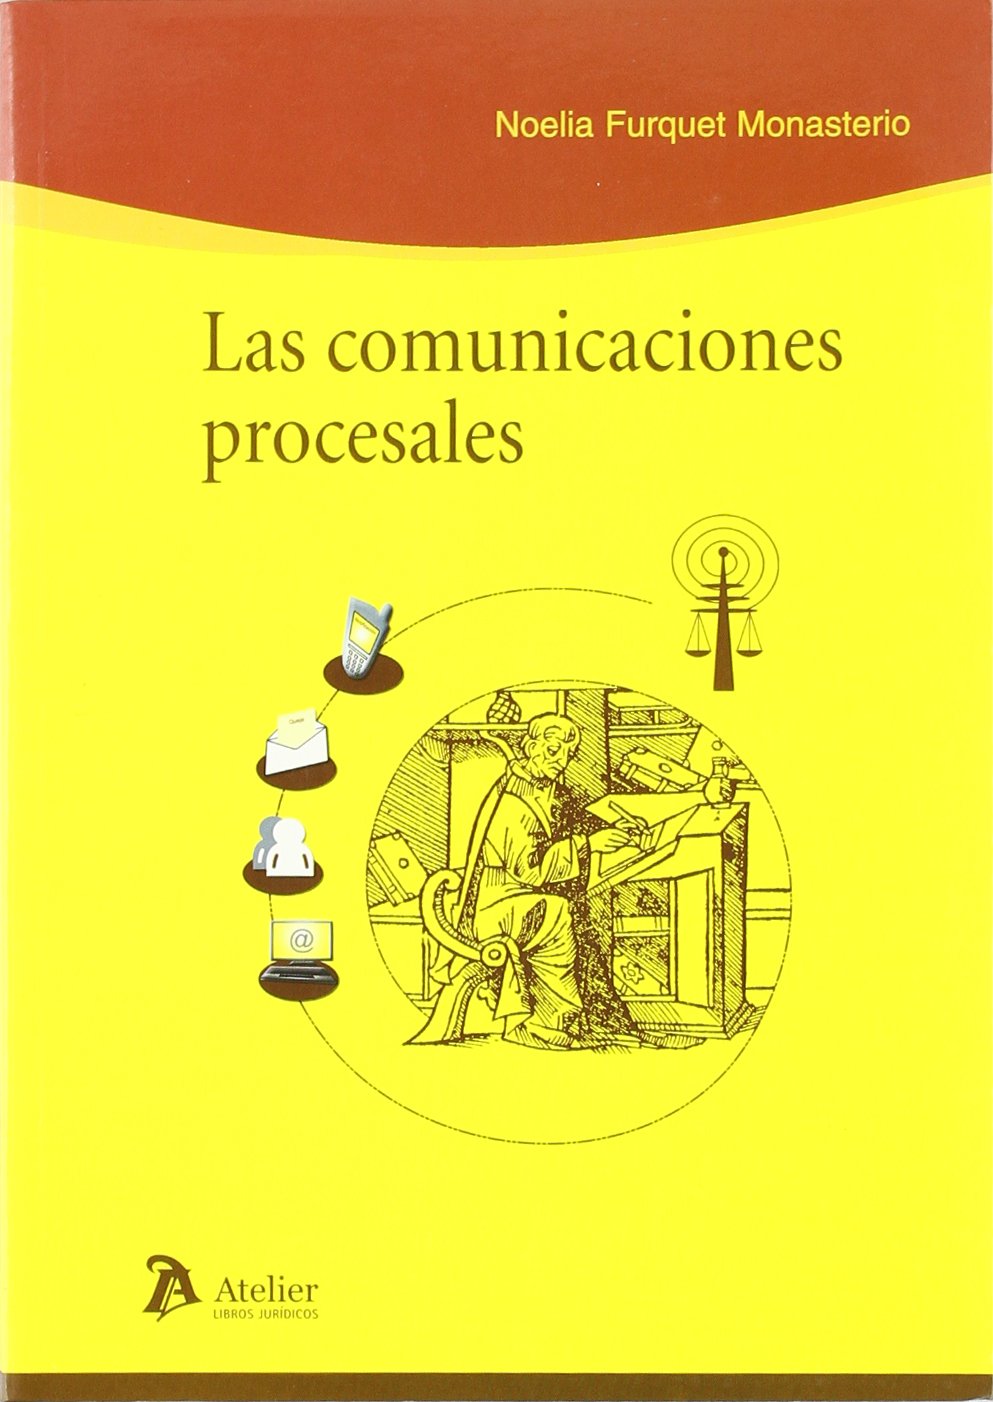 Las comunicaciones procesales